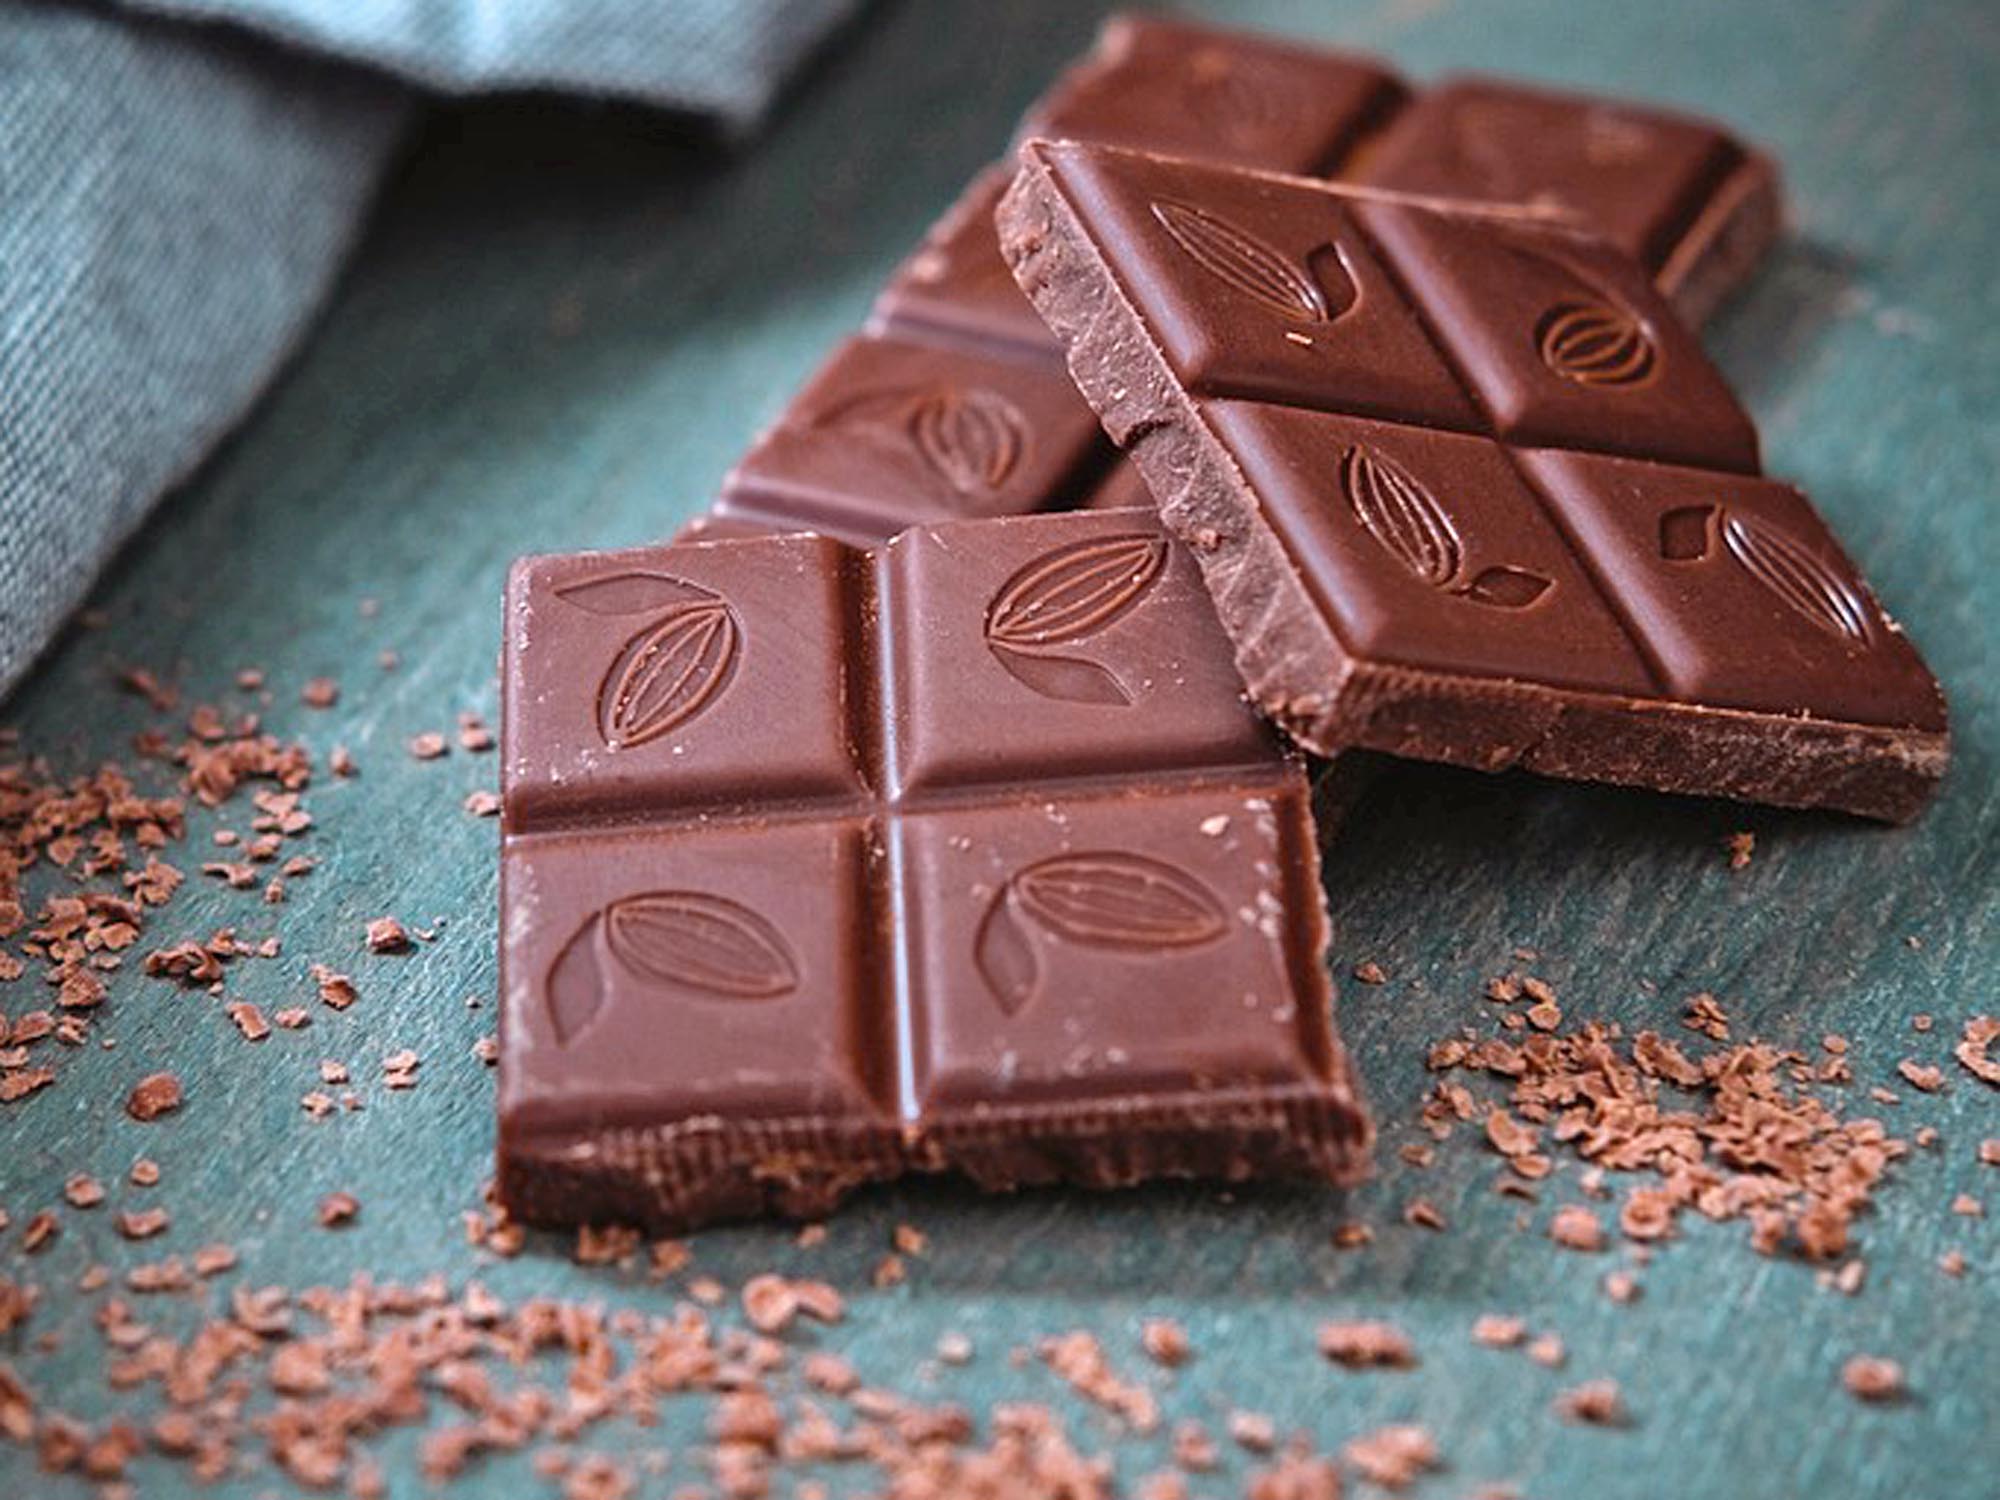 Schokolade und Kakaoerzeugnisse